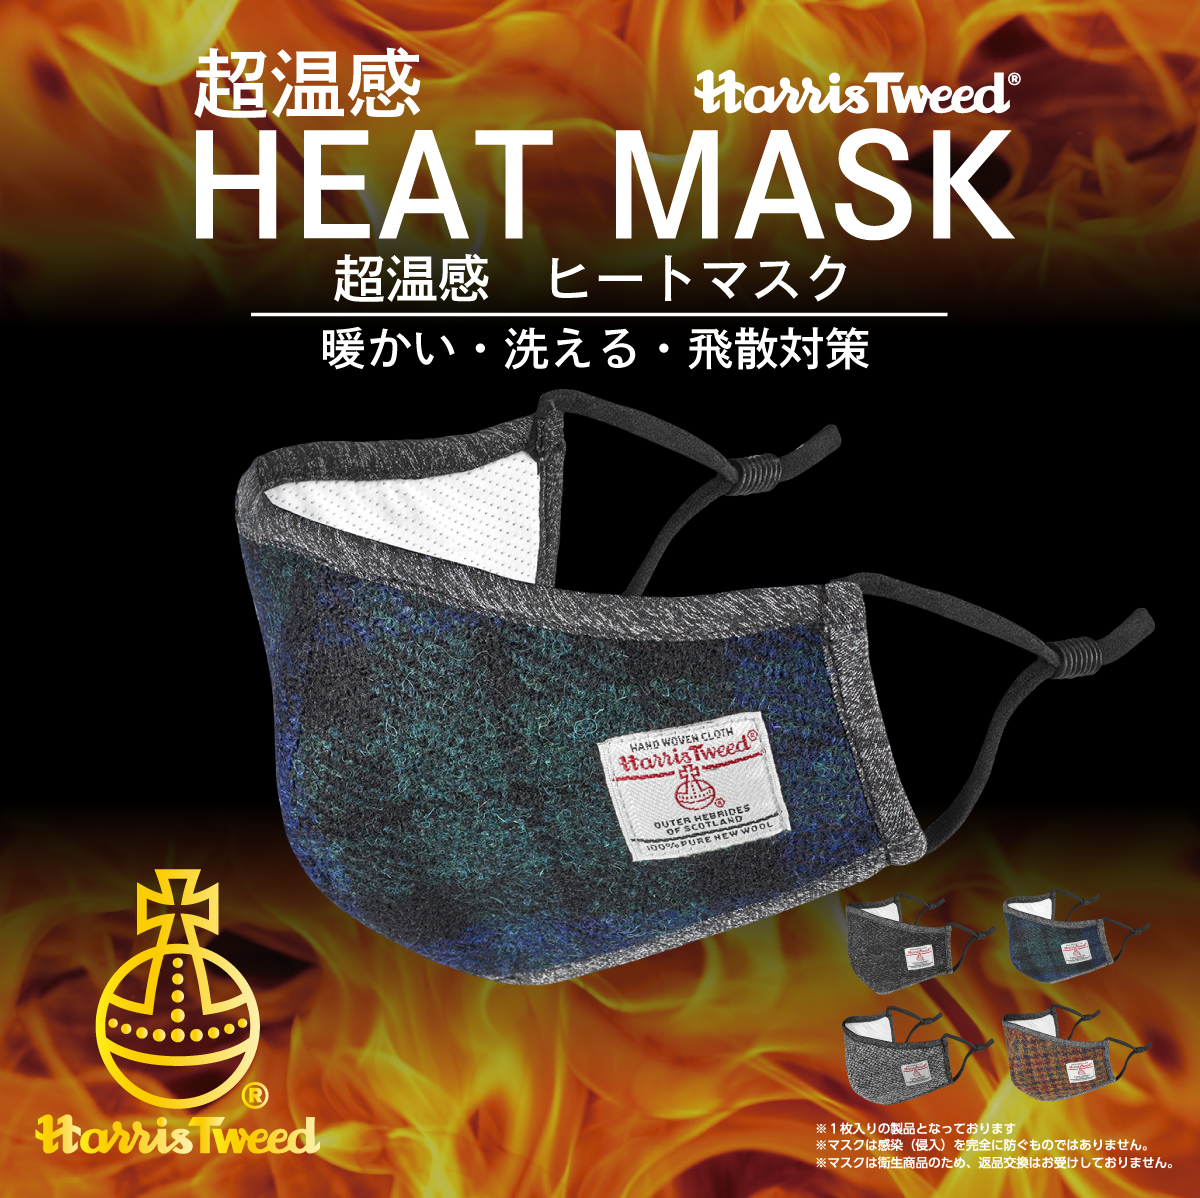 テレビで紹介 超温感 Heat Mask ハリスツイード コロナウイルス対策 ヒートマスク ３層タイプ Hm001 株式会社ギャレリアインターナショナル